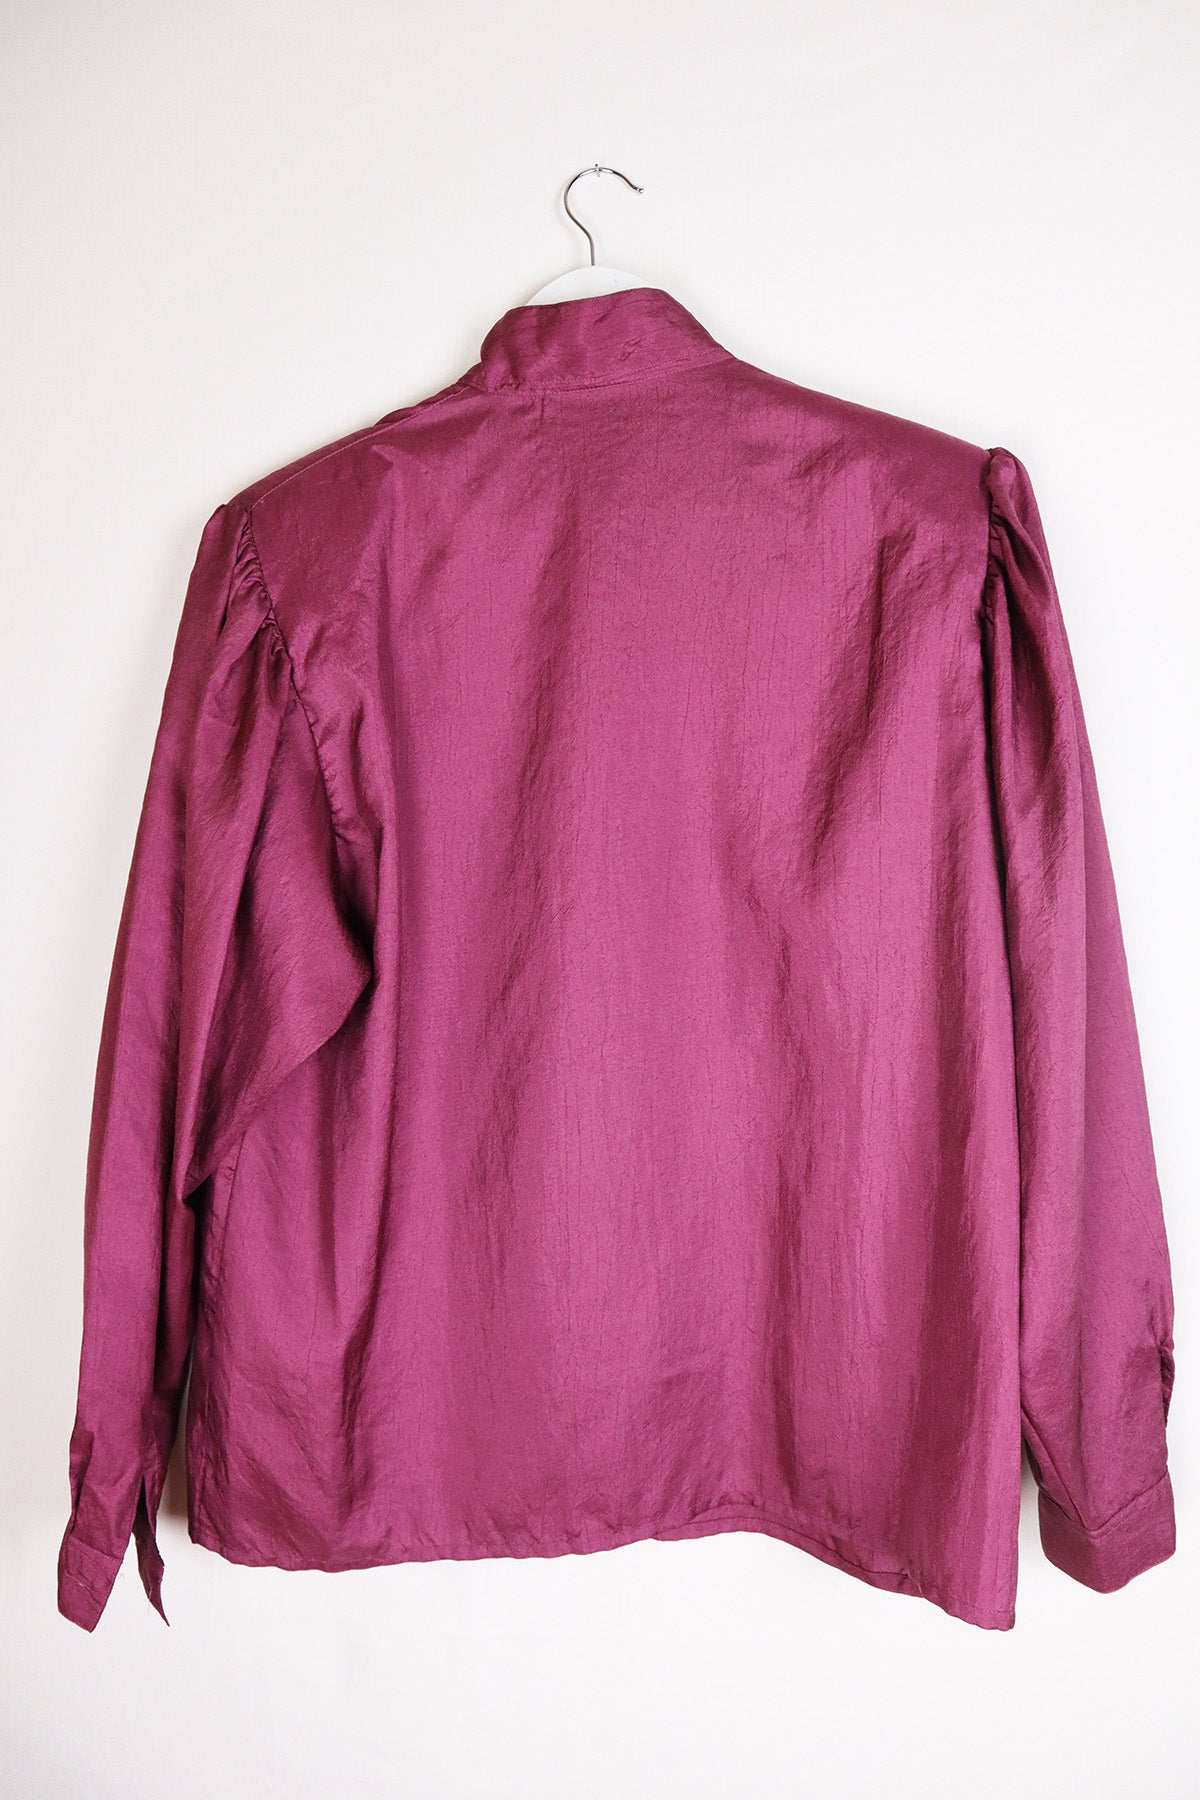 Bluse Vintage Dunkelrot ( Gr. M/L )